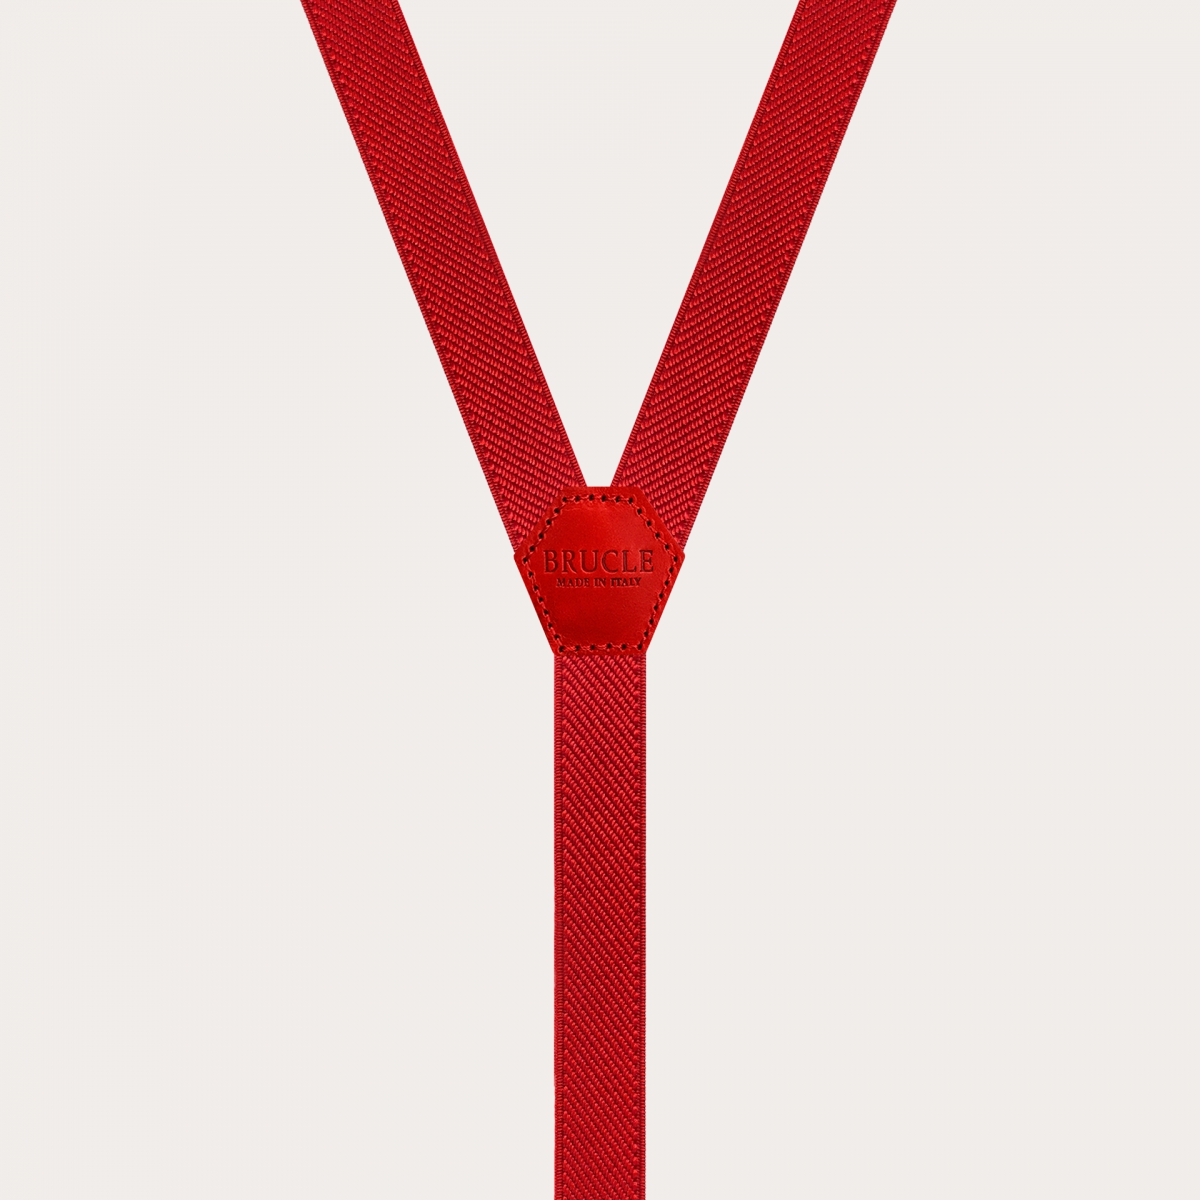 Schmale Unisex-Hosenträger in Y-Form für Kinder und Jugendliche, rot